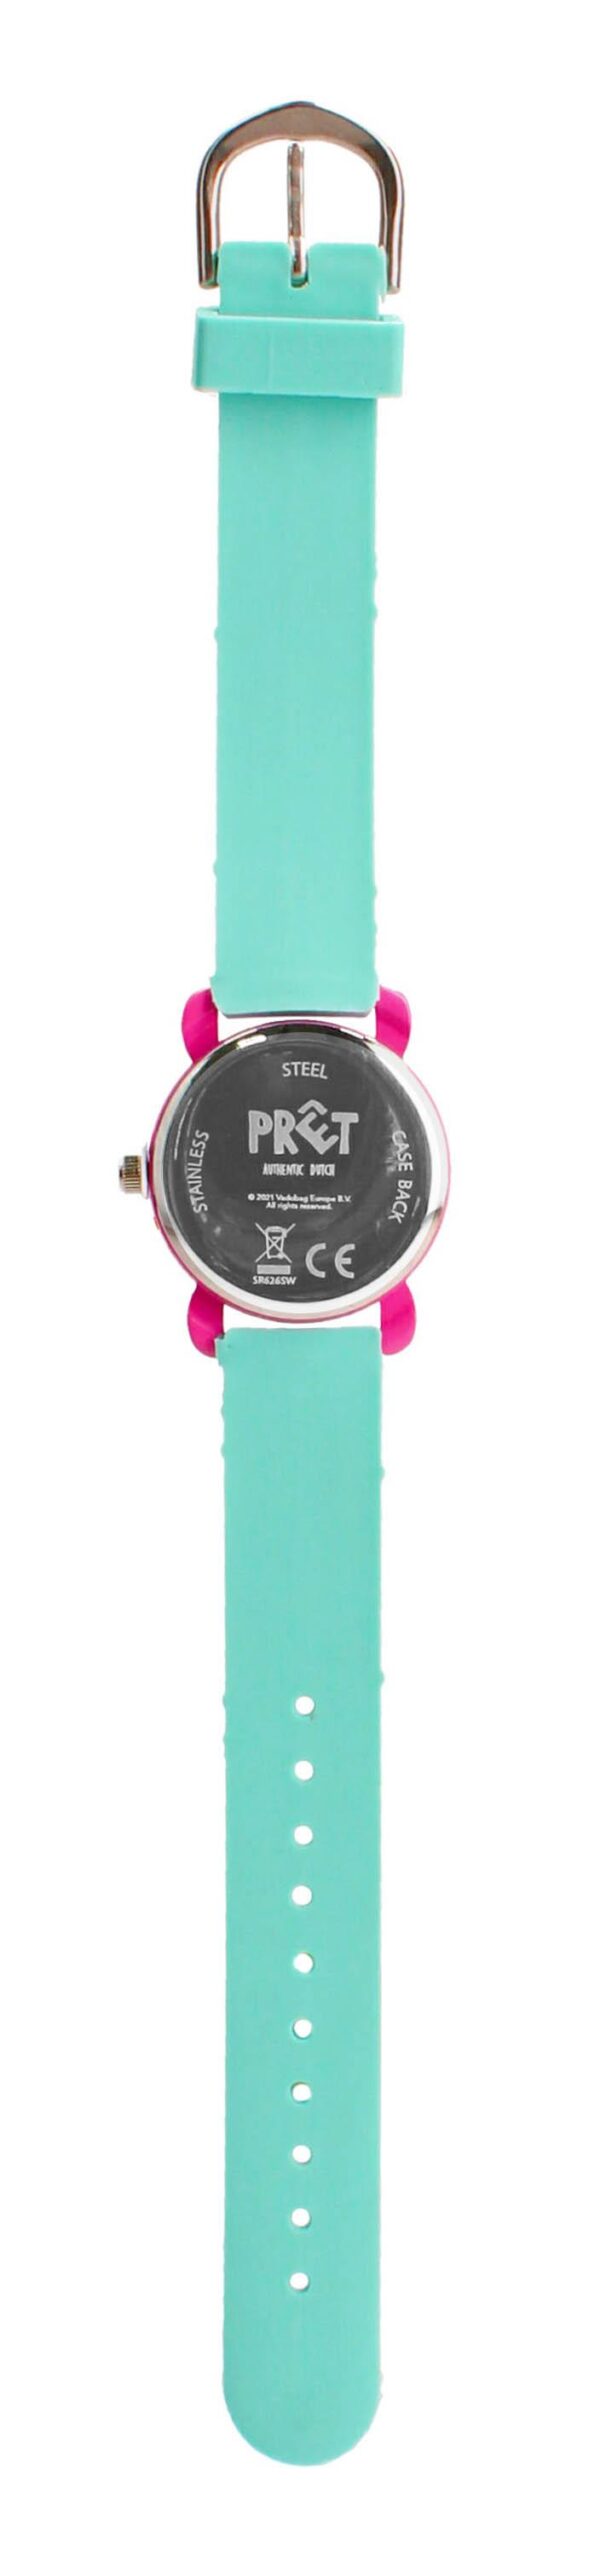 PRET Zegarek dla dzieci HappyTimes Zebra pink mint